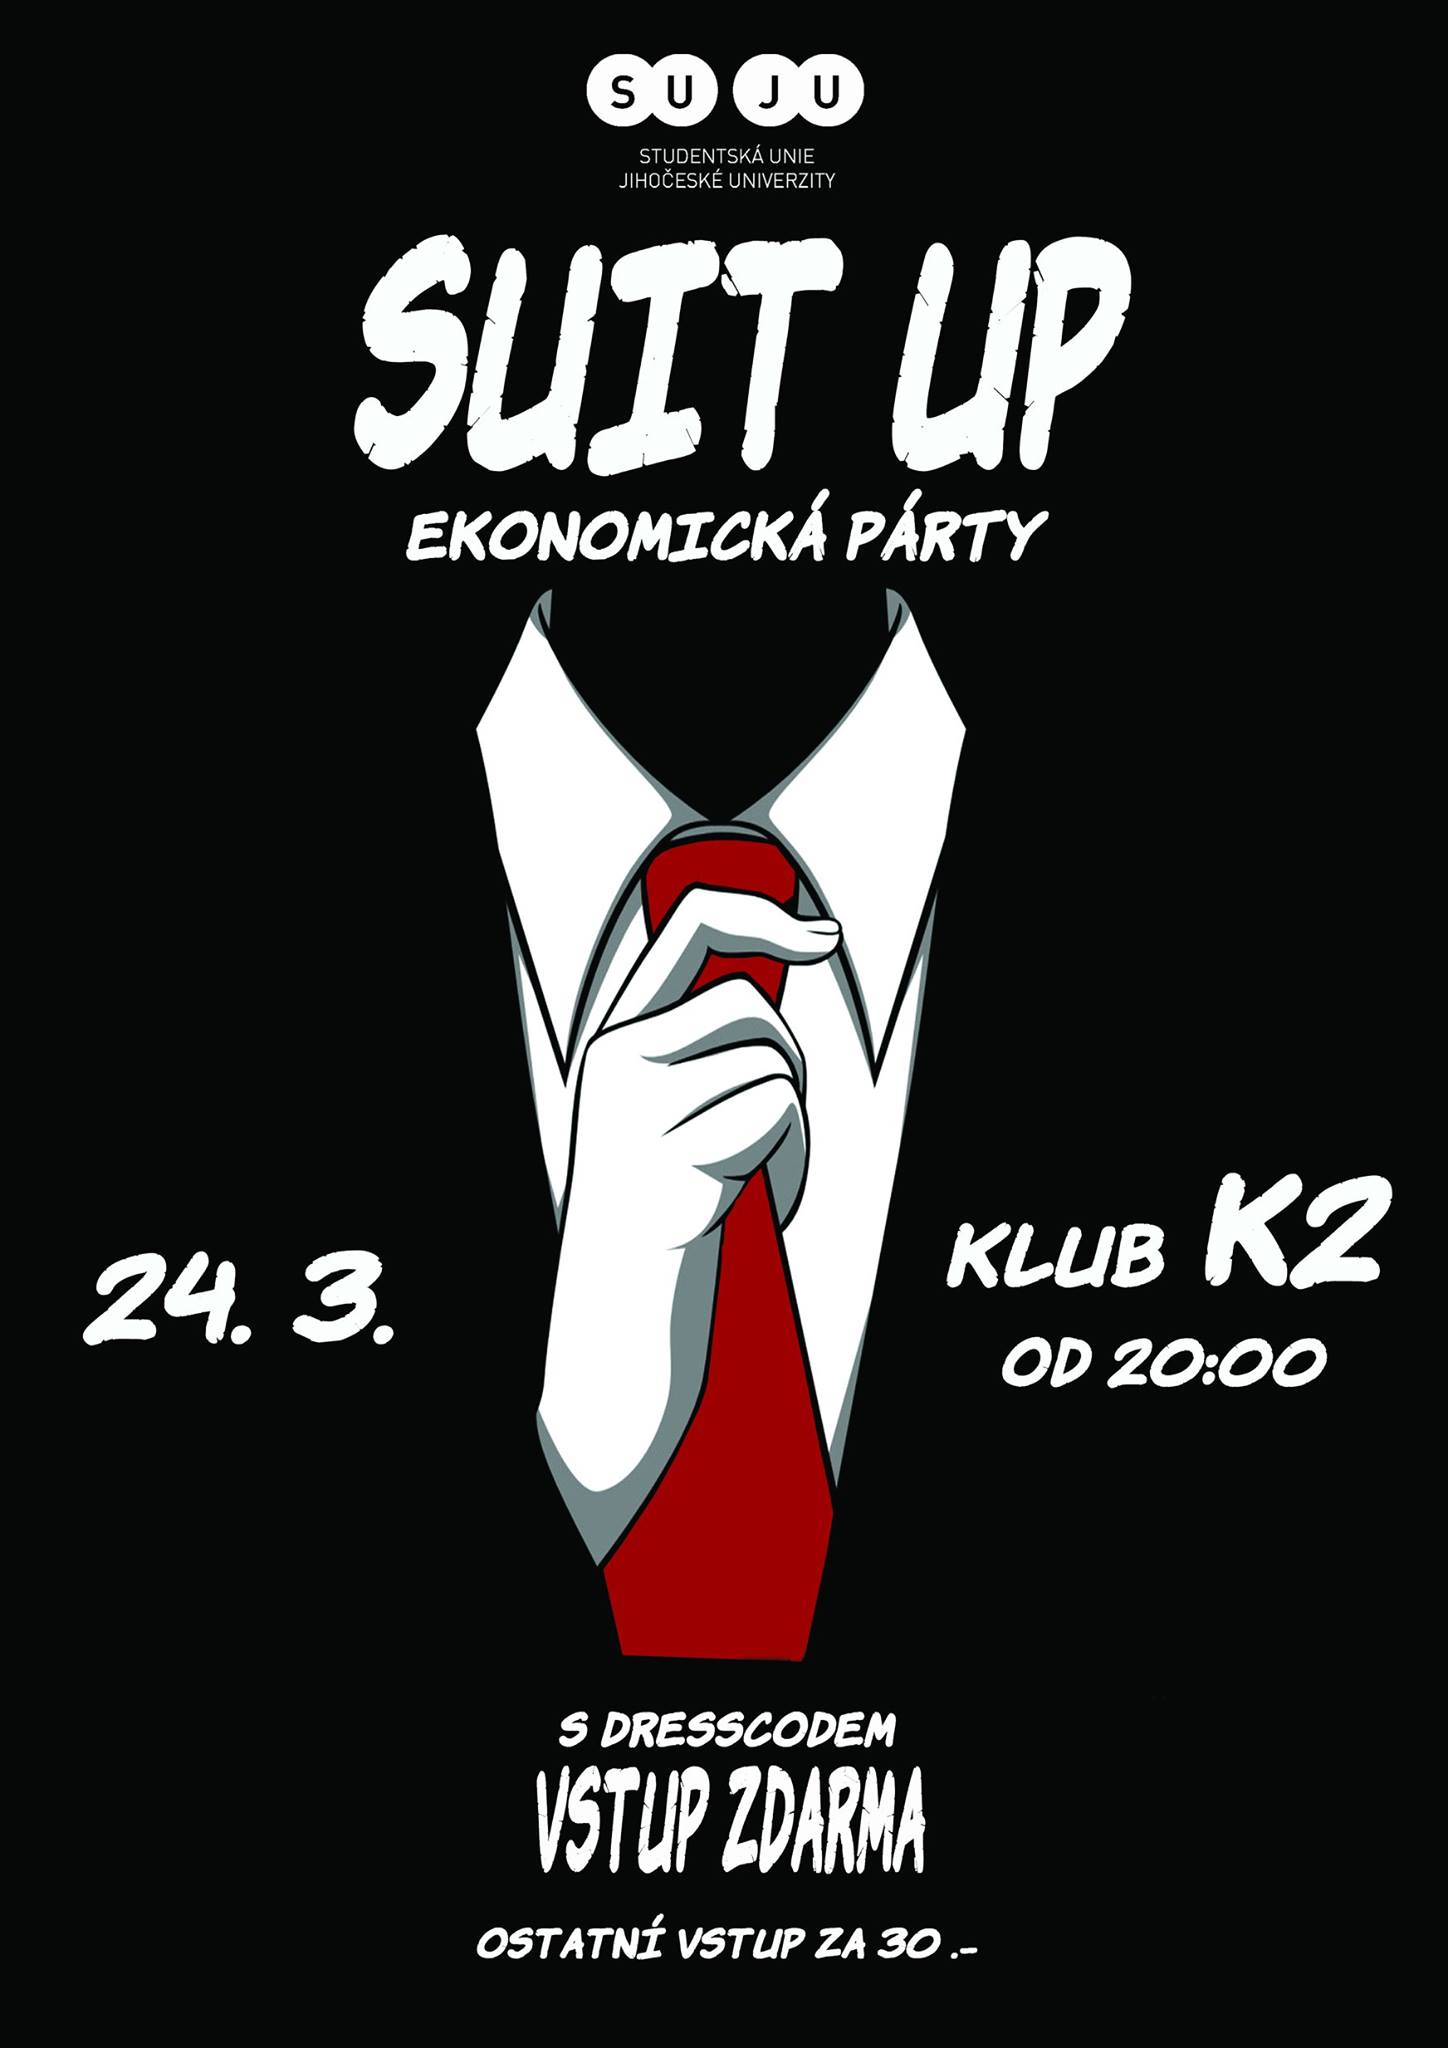 Suit Up party Ekonomické fakulty